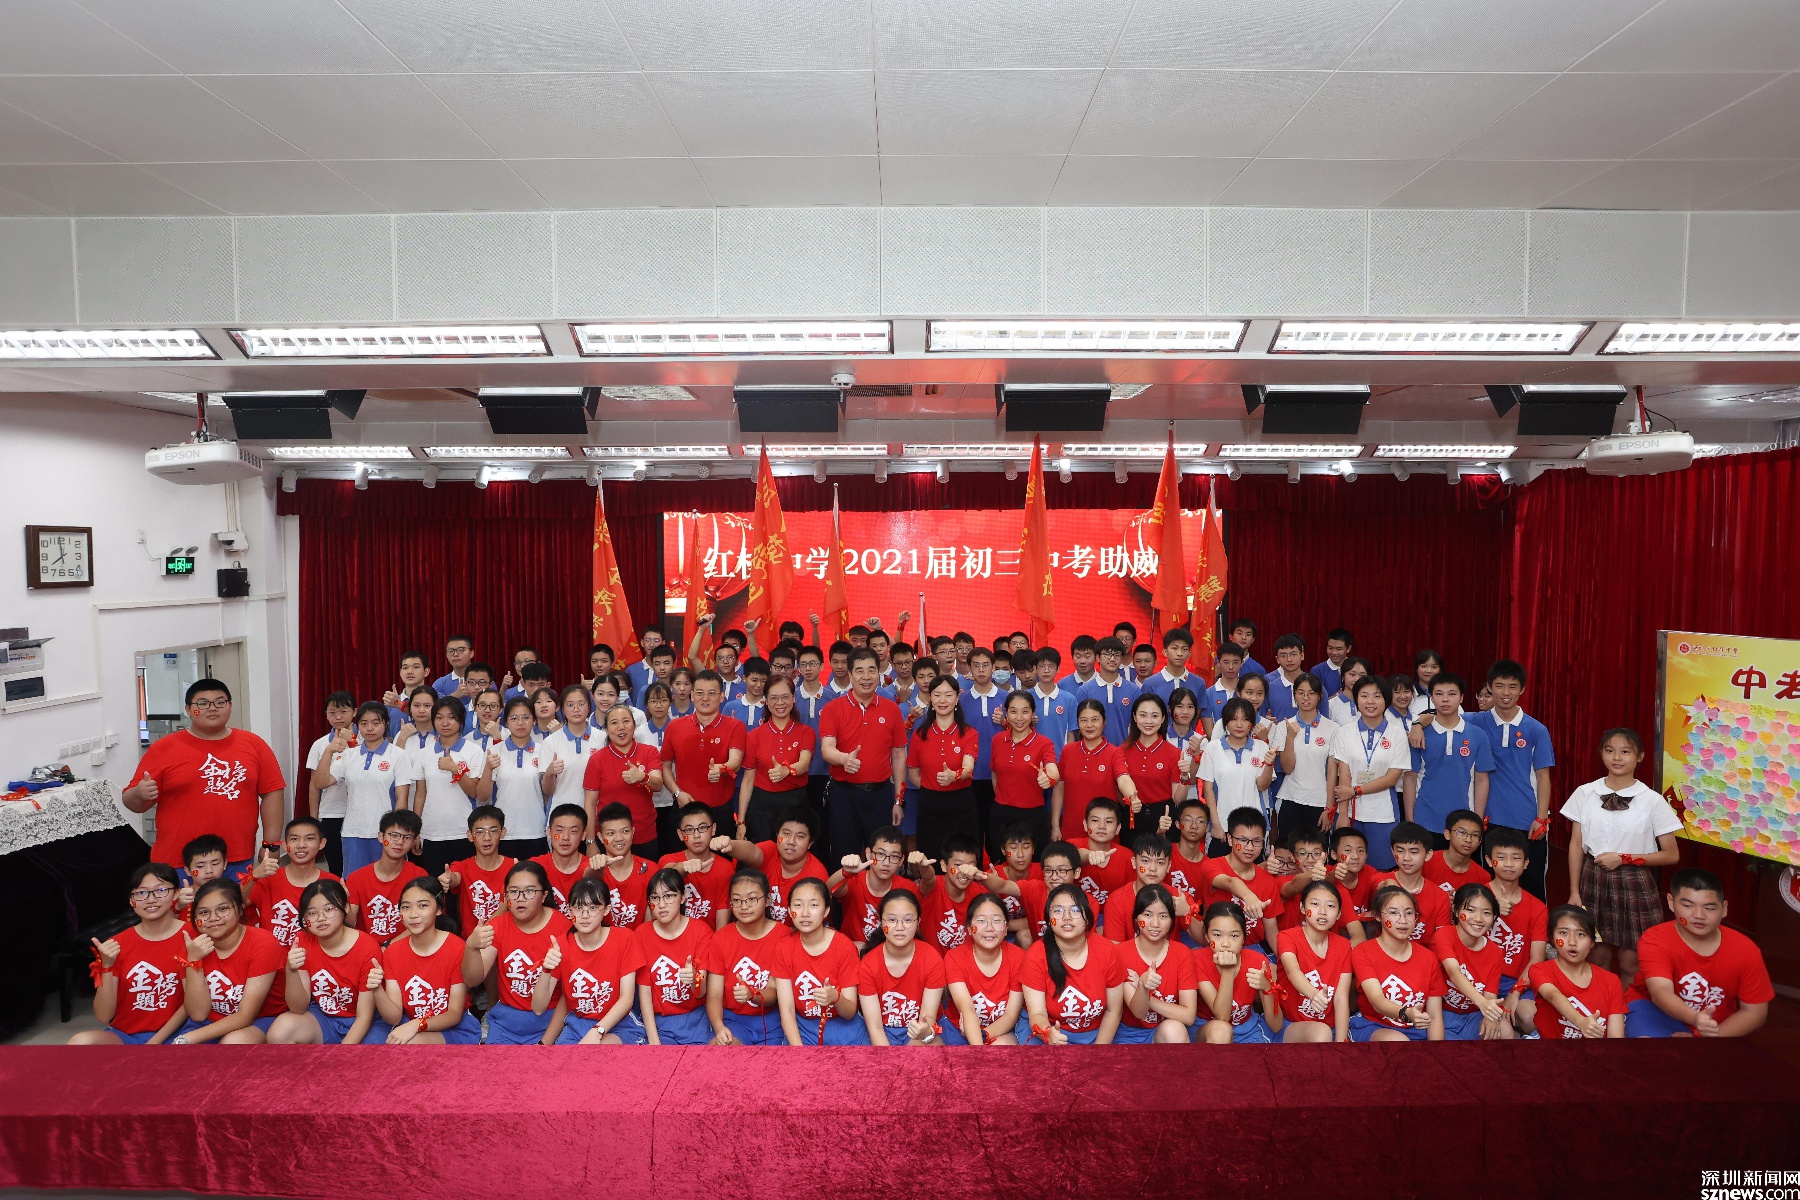 中考倒计时10天!深圳市红桂中学举行中考助威活动